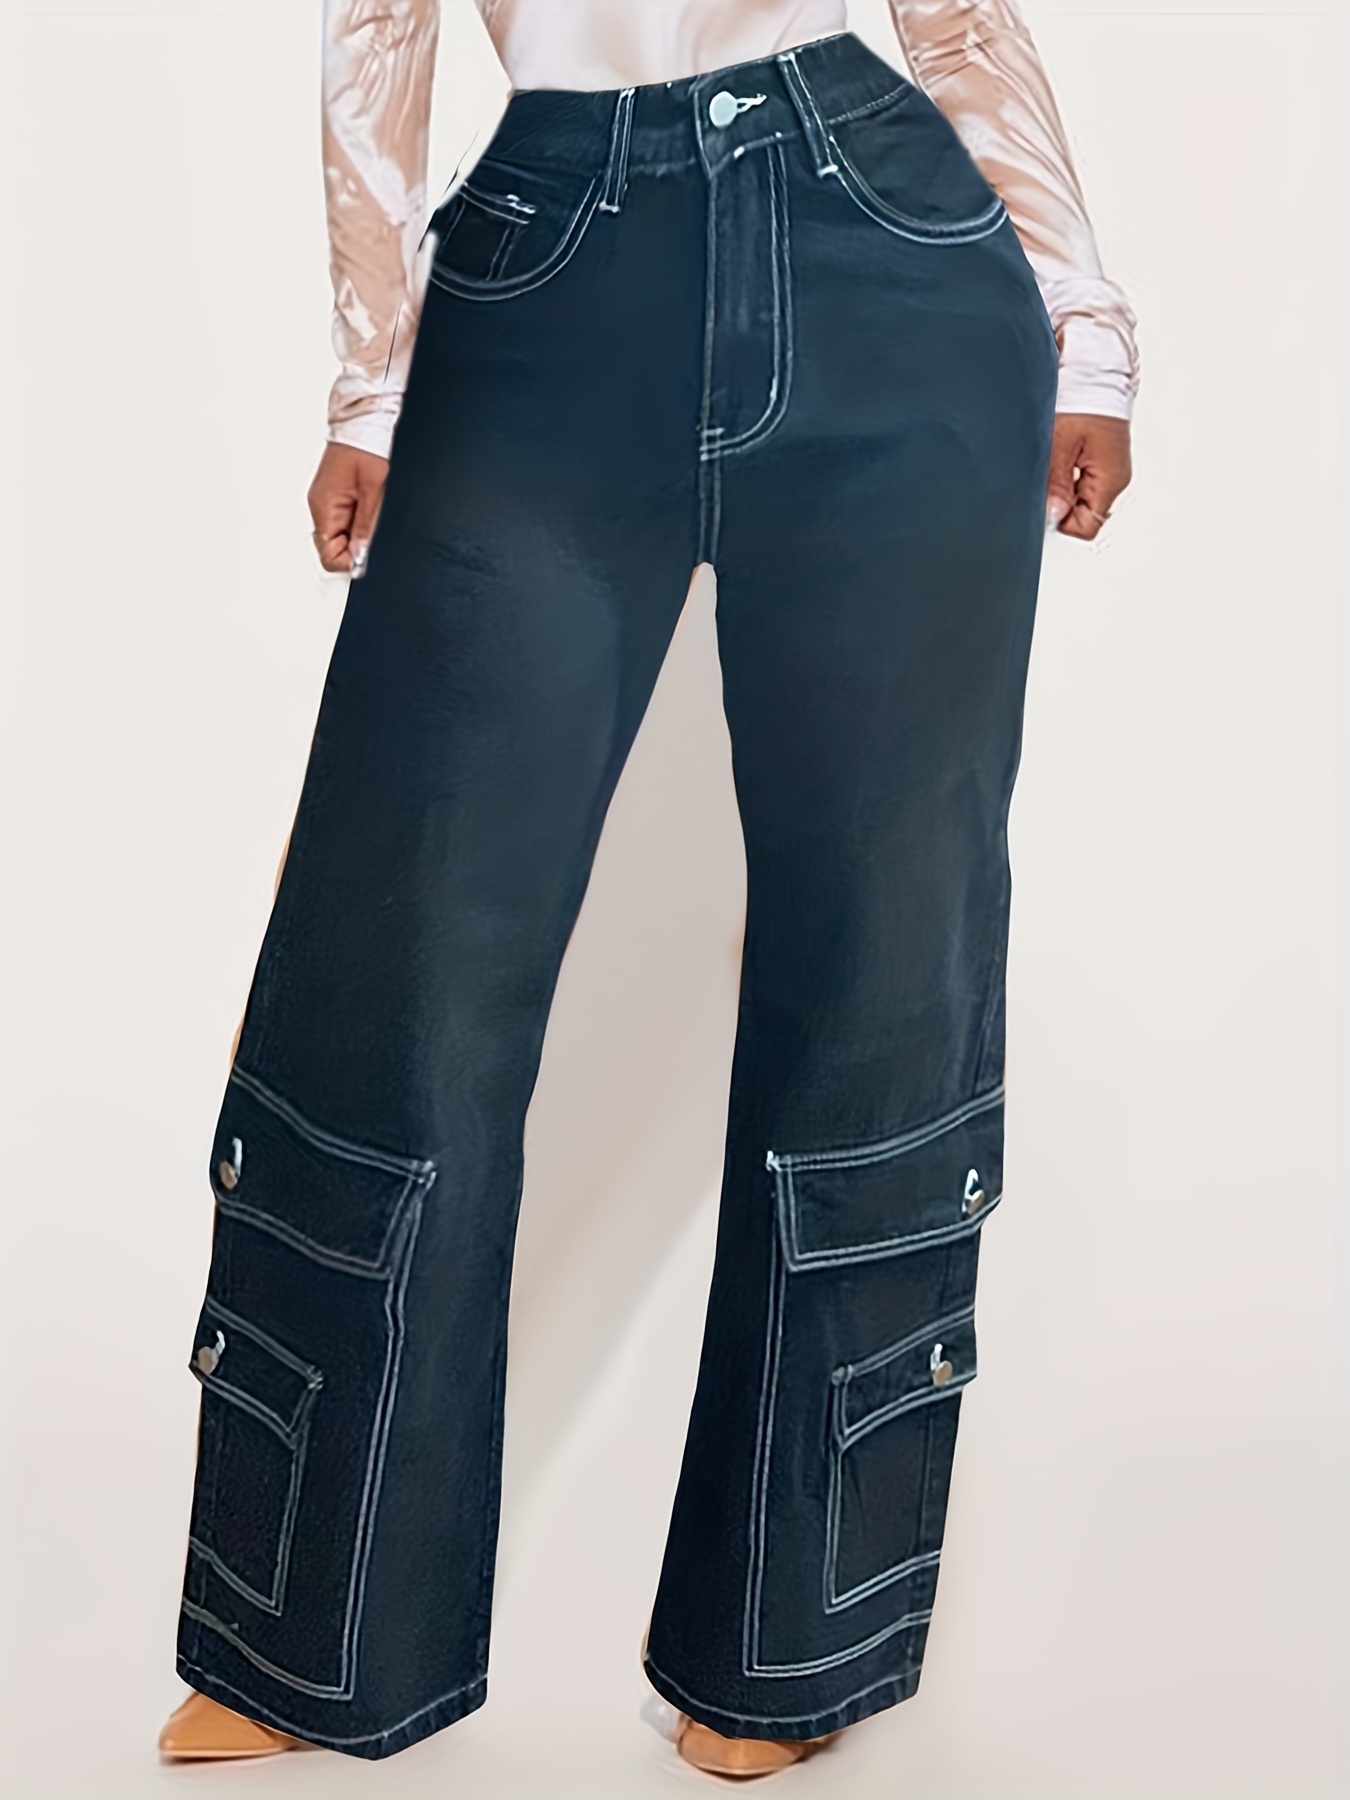  Pantalones de mujer - Pantalones cargo sólidos (Color